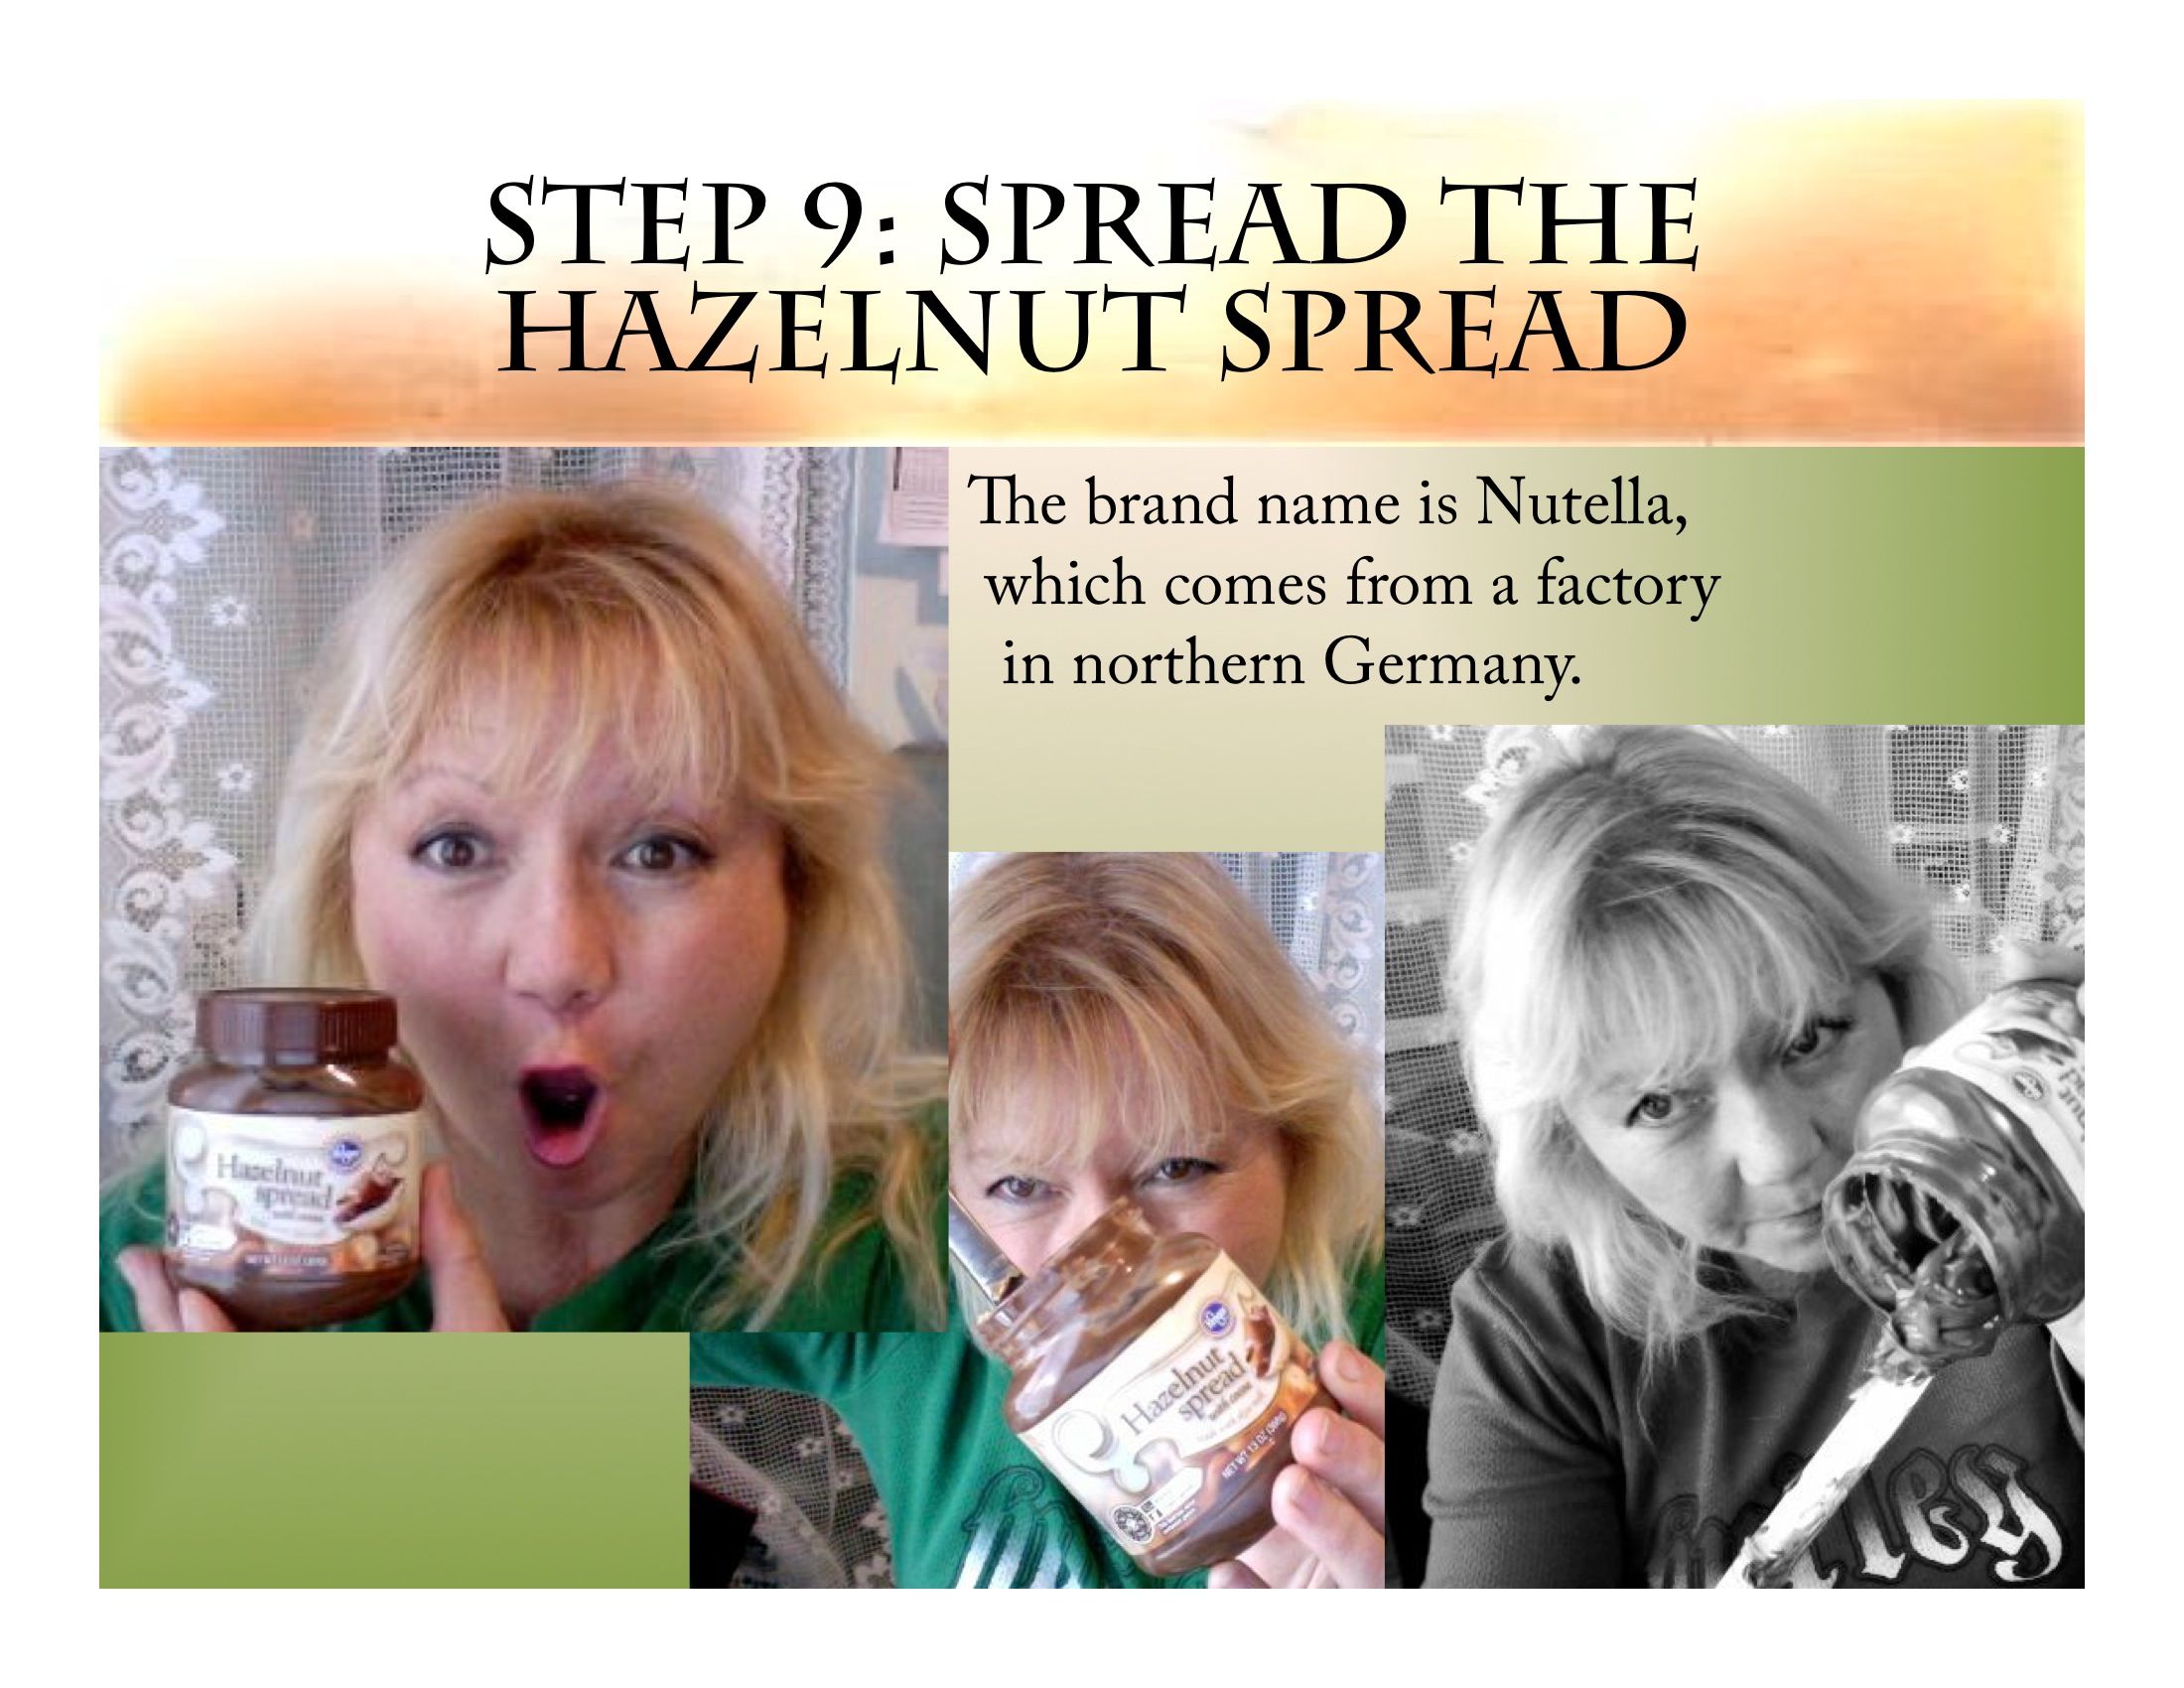 Step 9: Spread the Hazelnut Spread